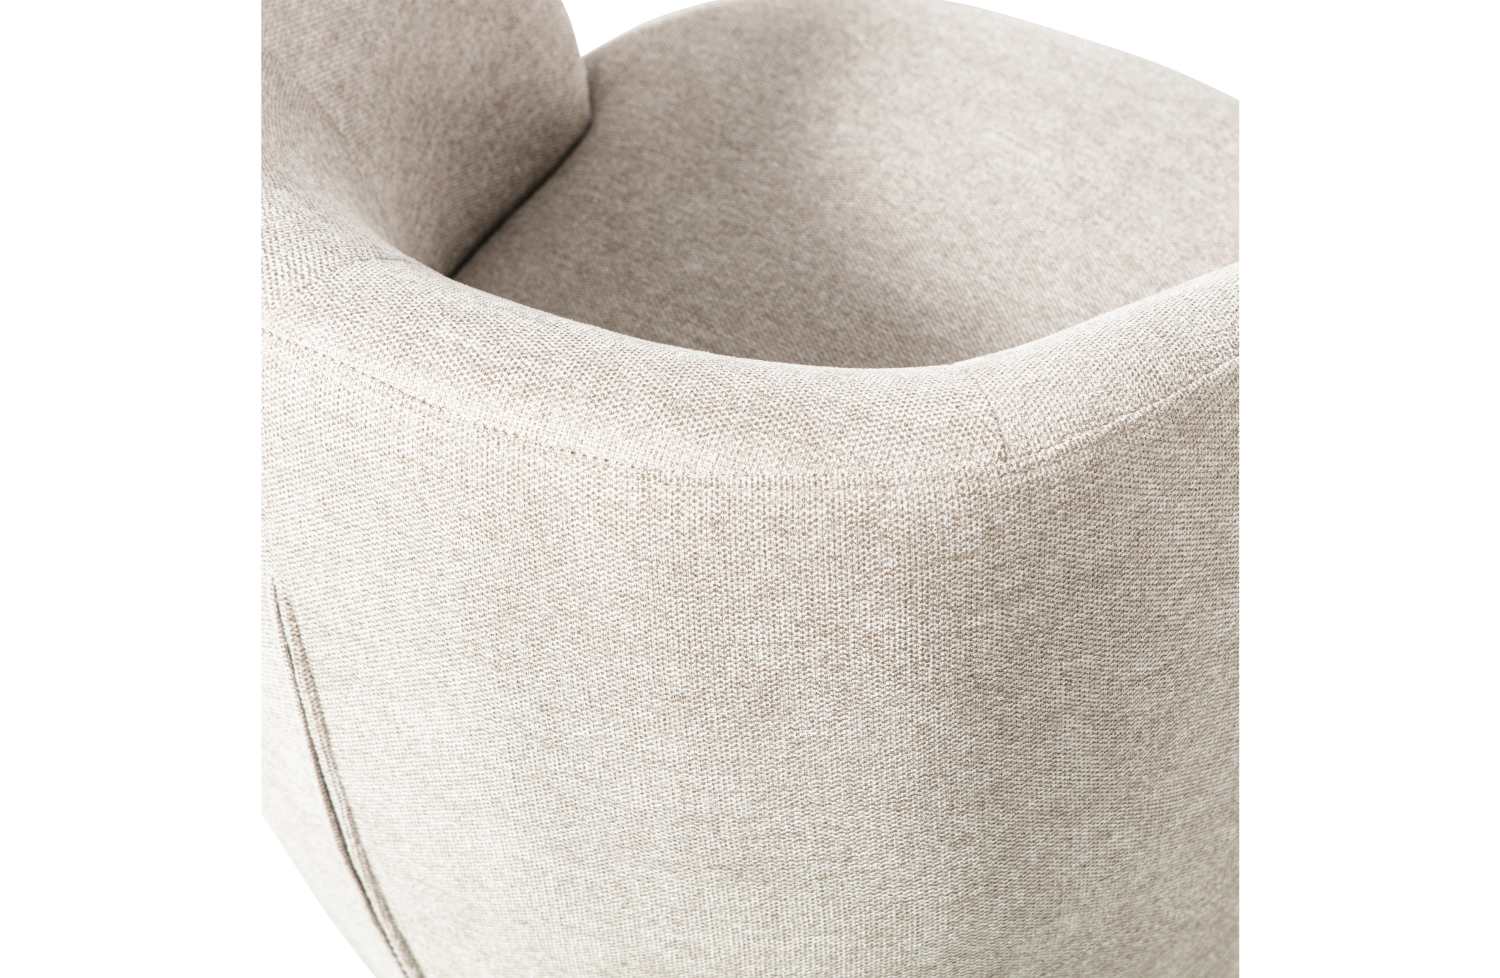 Der Drehsessel Serra überzeugt mit seinem modernen Design. Gefertigt wurde er aus Webstoff, welcher einen weißen Farbton besitzt. Das Gestell ist aus Metall und  hat eine schwarze Farbe. Die Sitzhöhe des Sessels beträgt 42 cm.